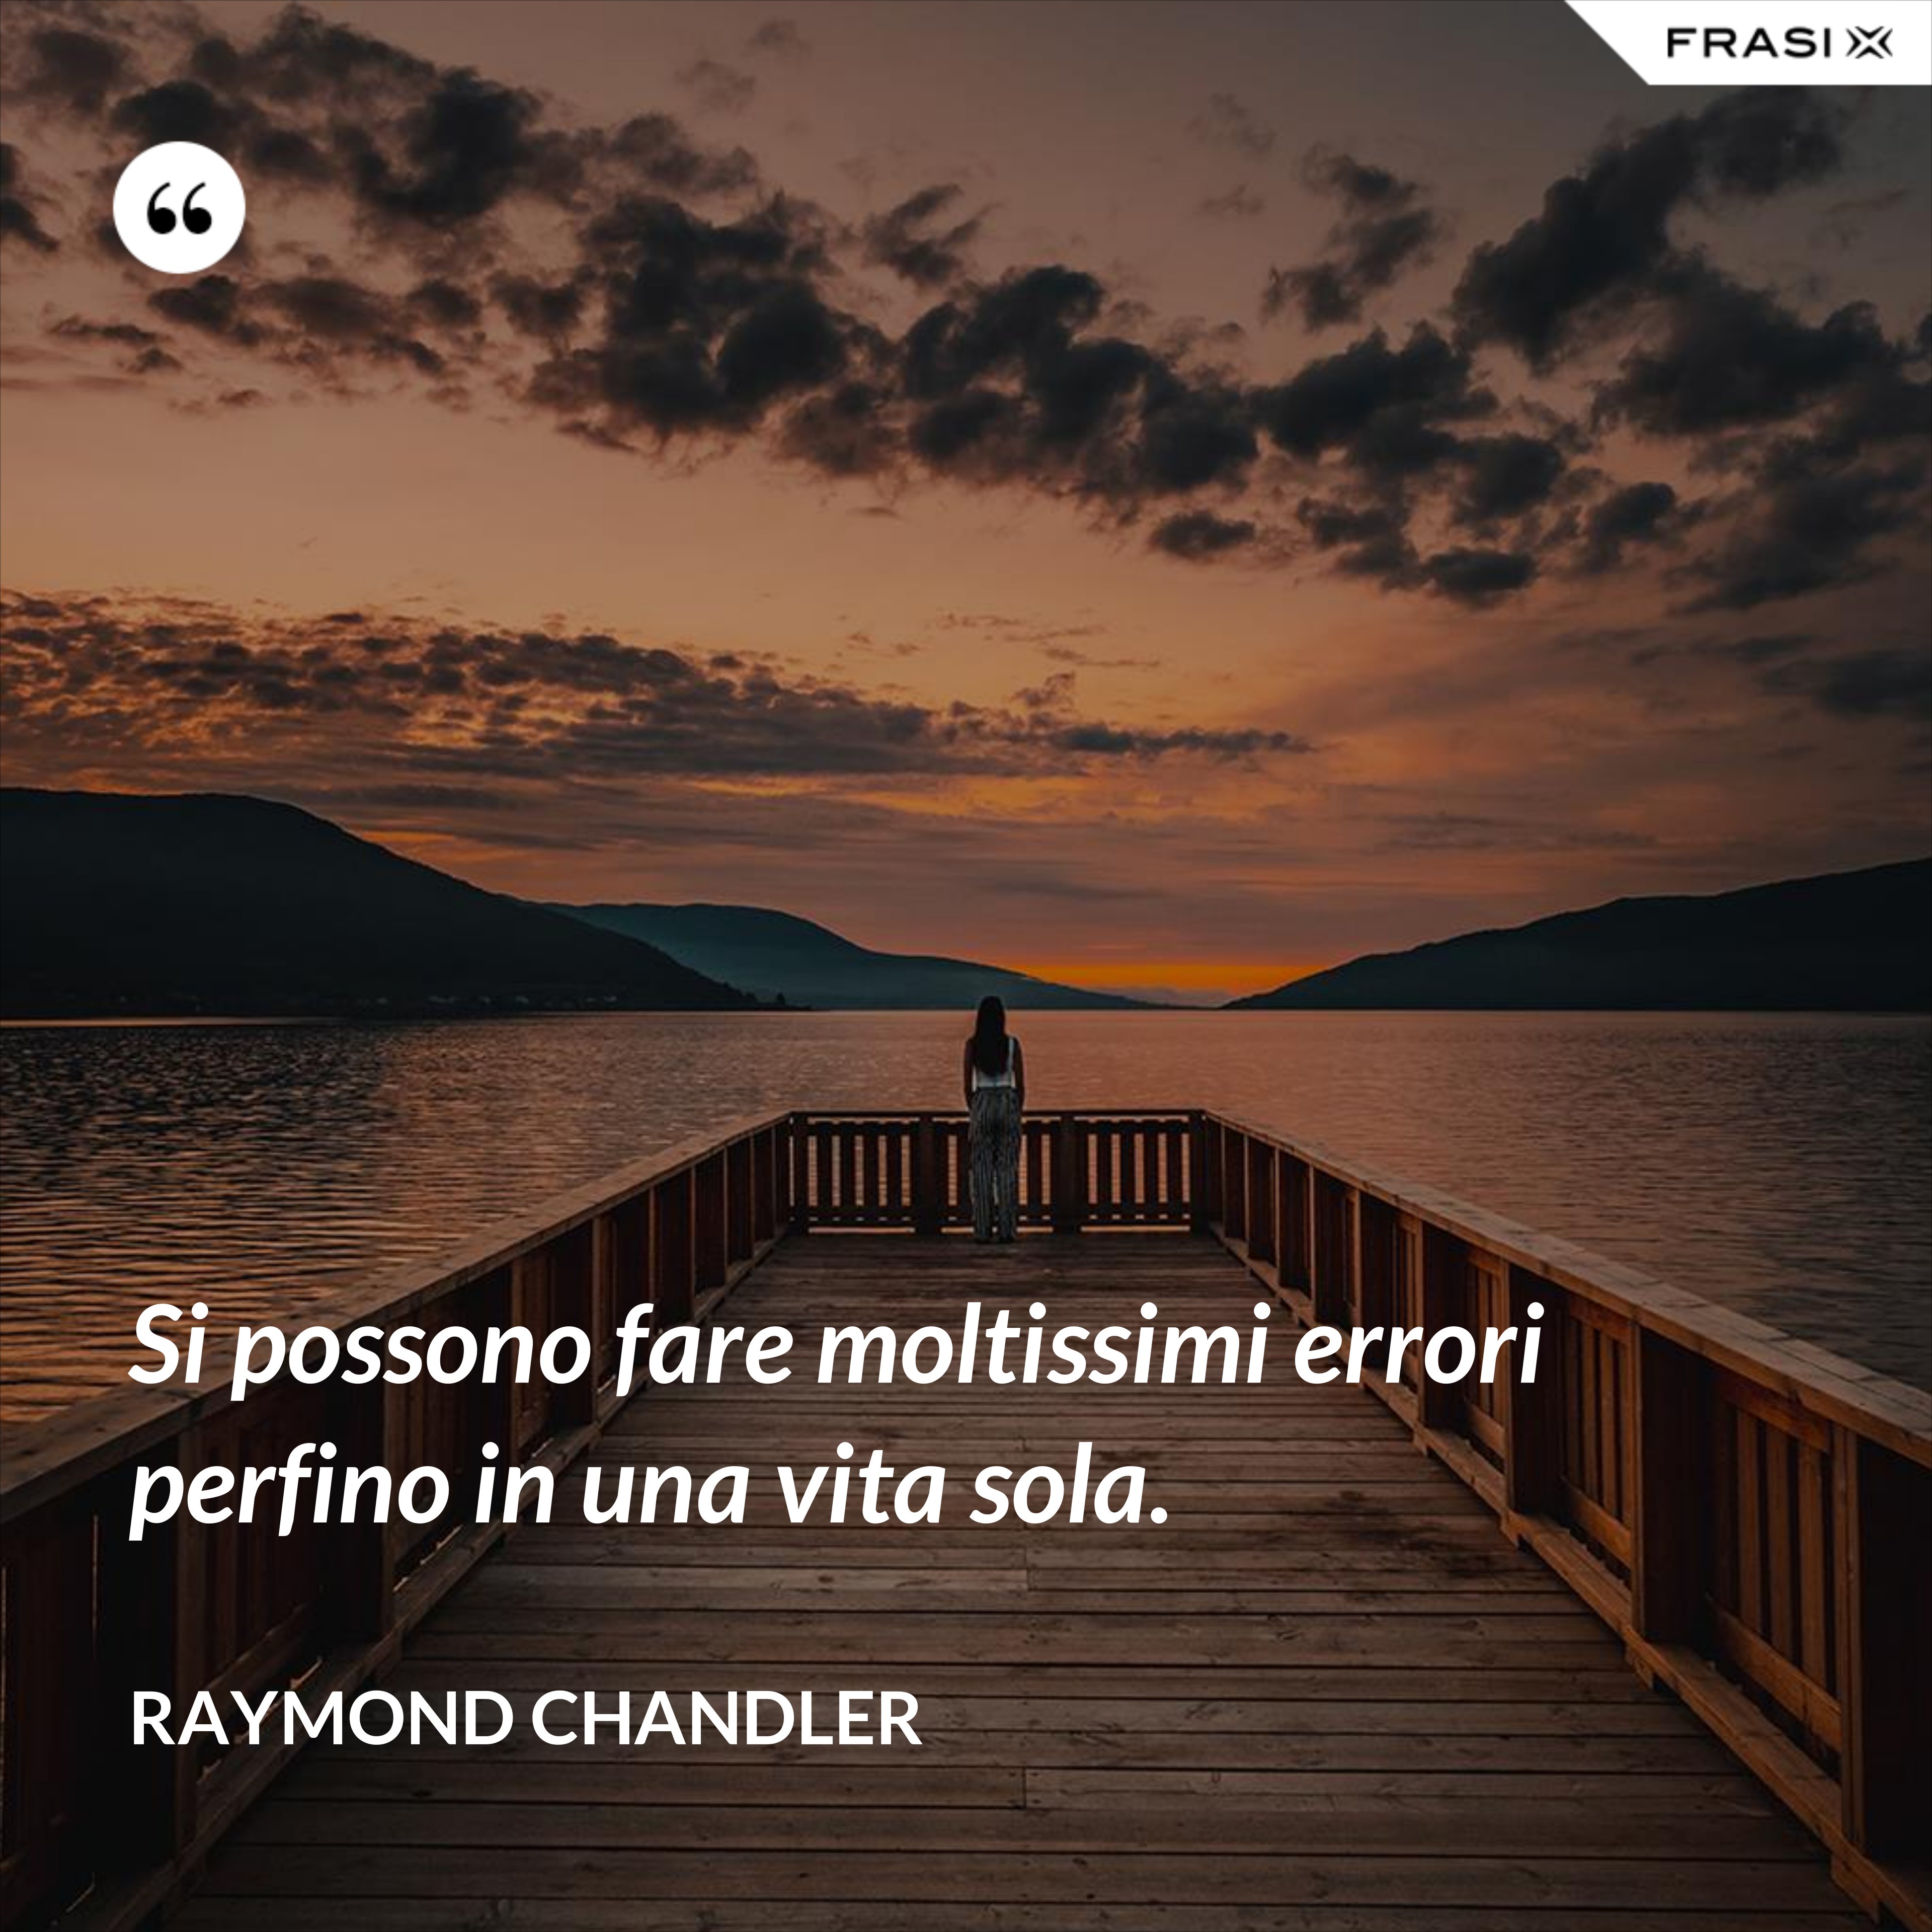 Si possono fare moltissimi errori perfino in una vita sola. - Raymond Chandler